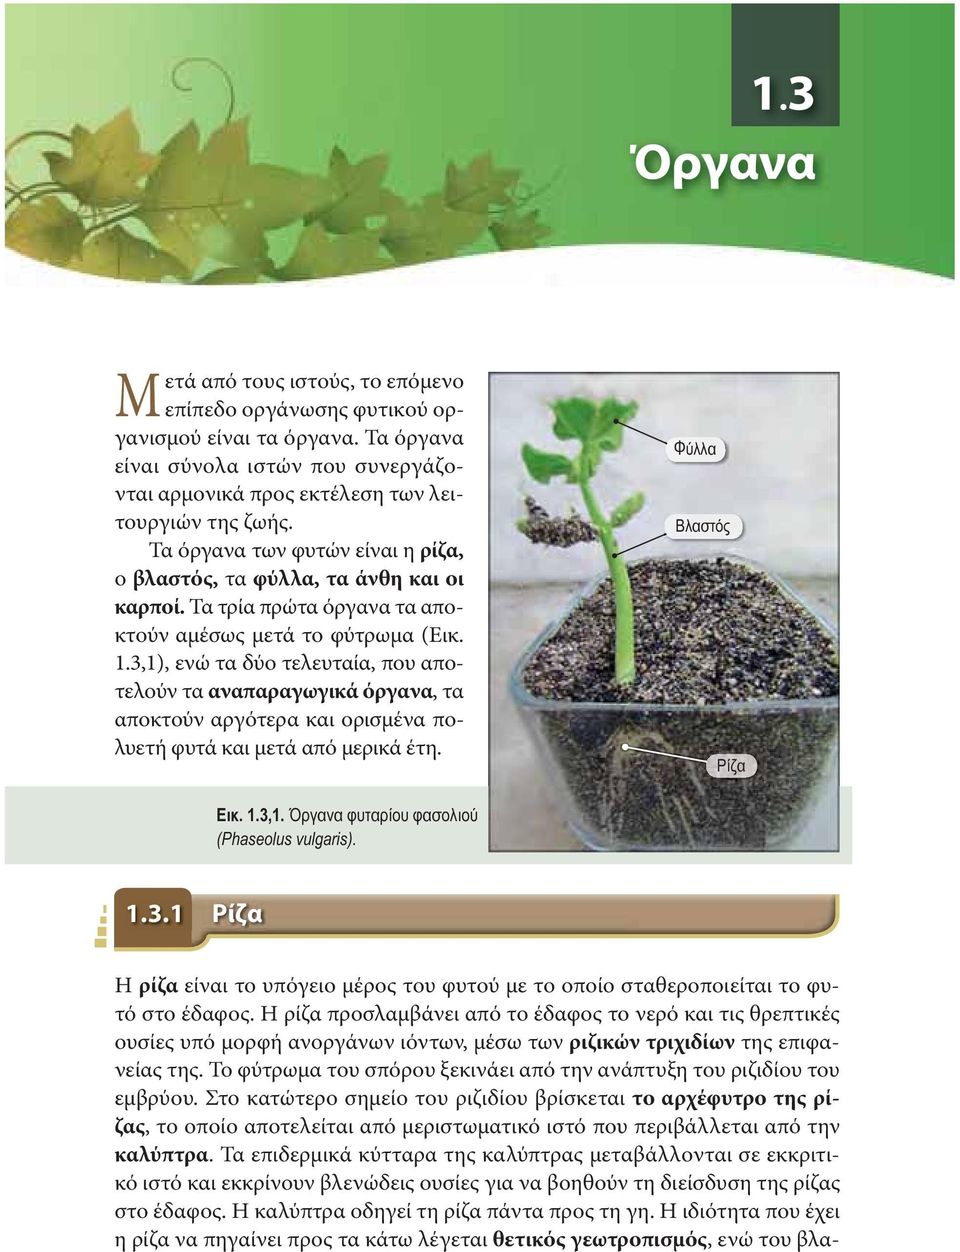 3,1), ενώ τα δύο τελευταία, που αποτελούν τα αναπαραγωγικά όργανα, τα αποκτούν αργότερα και ορισμένα πολυετή φυτά και μετά από μερικά έτη. Φύλλα Βλαστός Ρίζα Εικ. 1.3,1. Όργανα φυταρίου φασολιού (Phaseolus vulgaris).